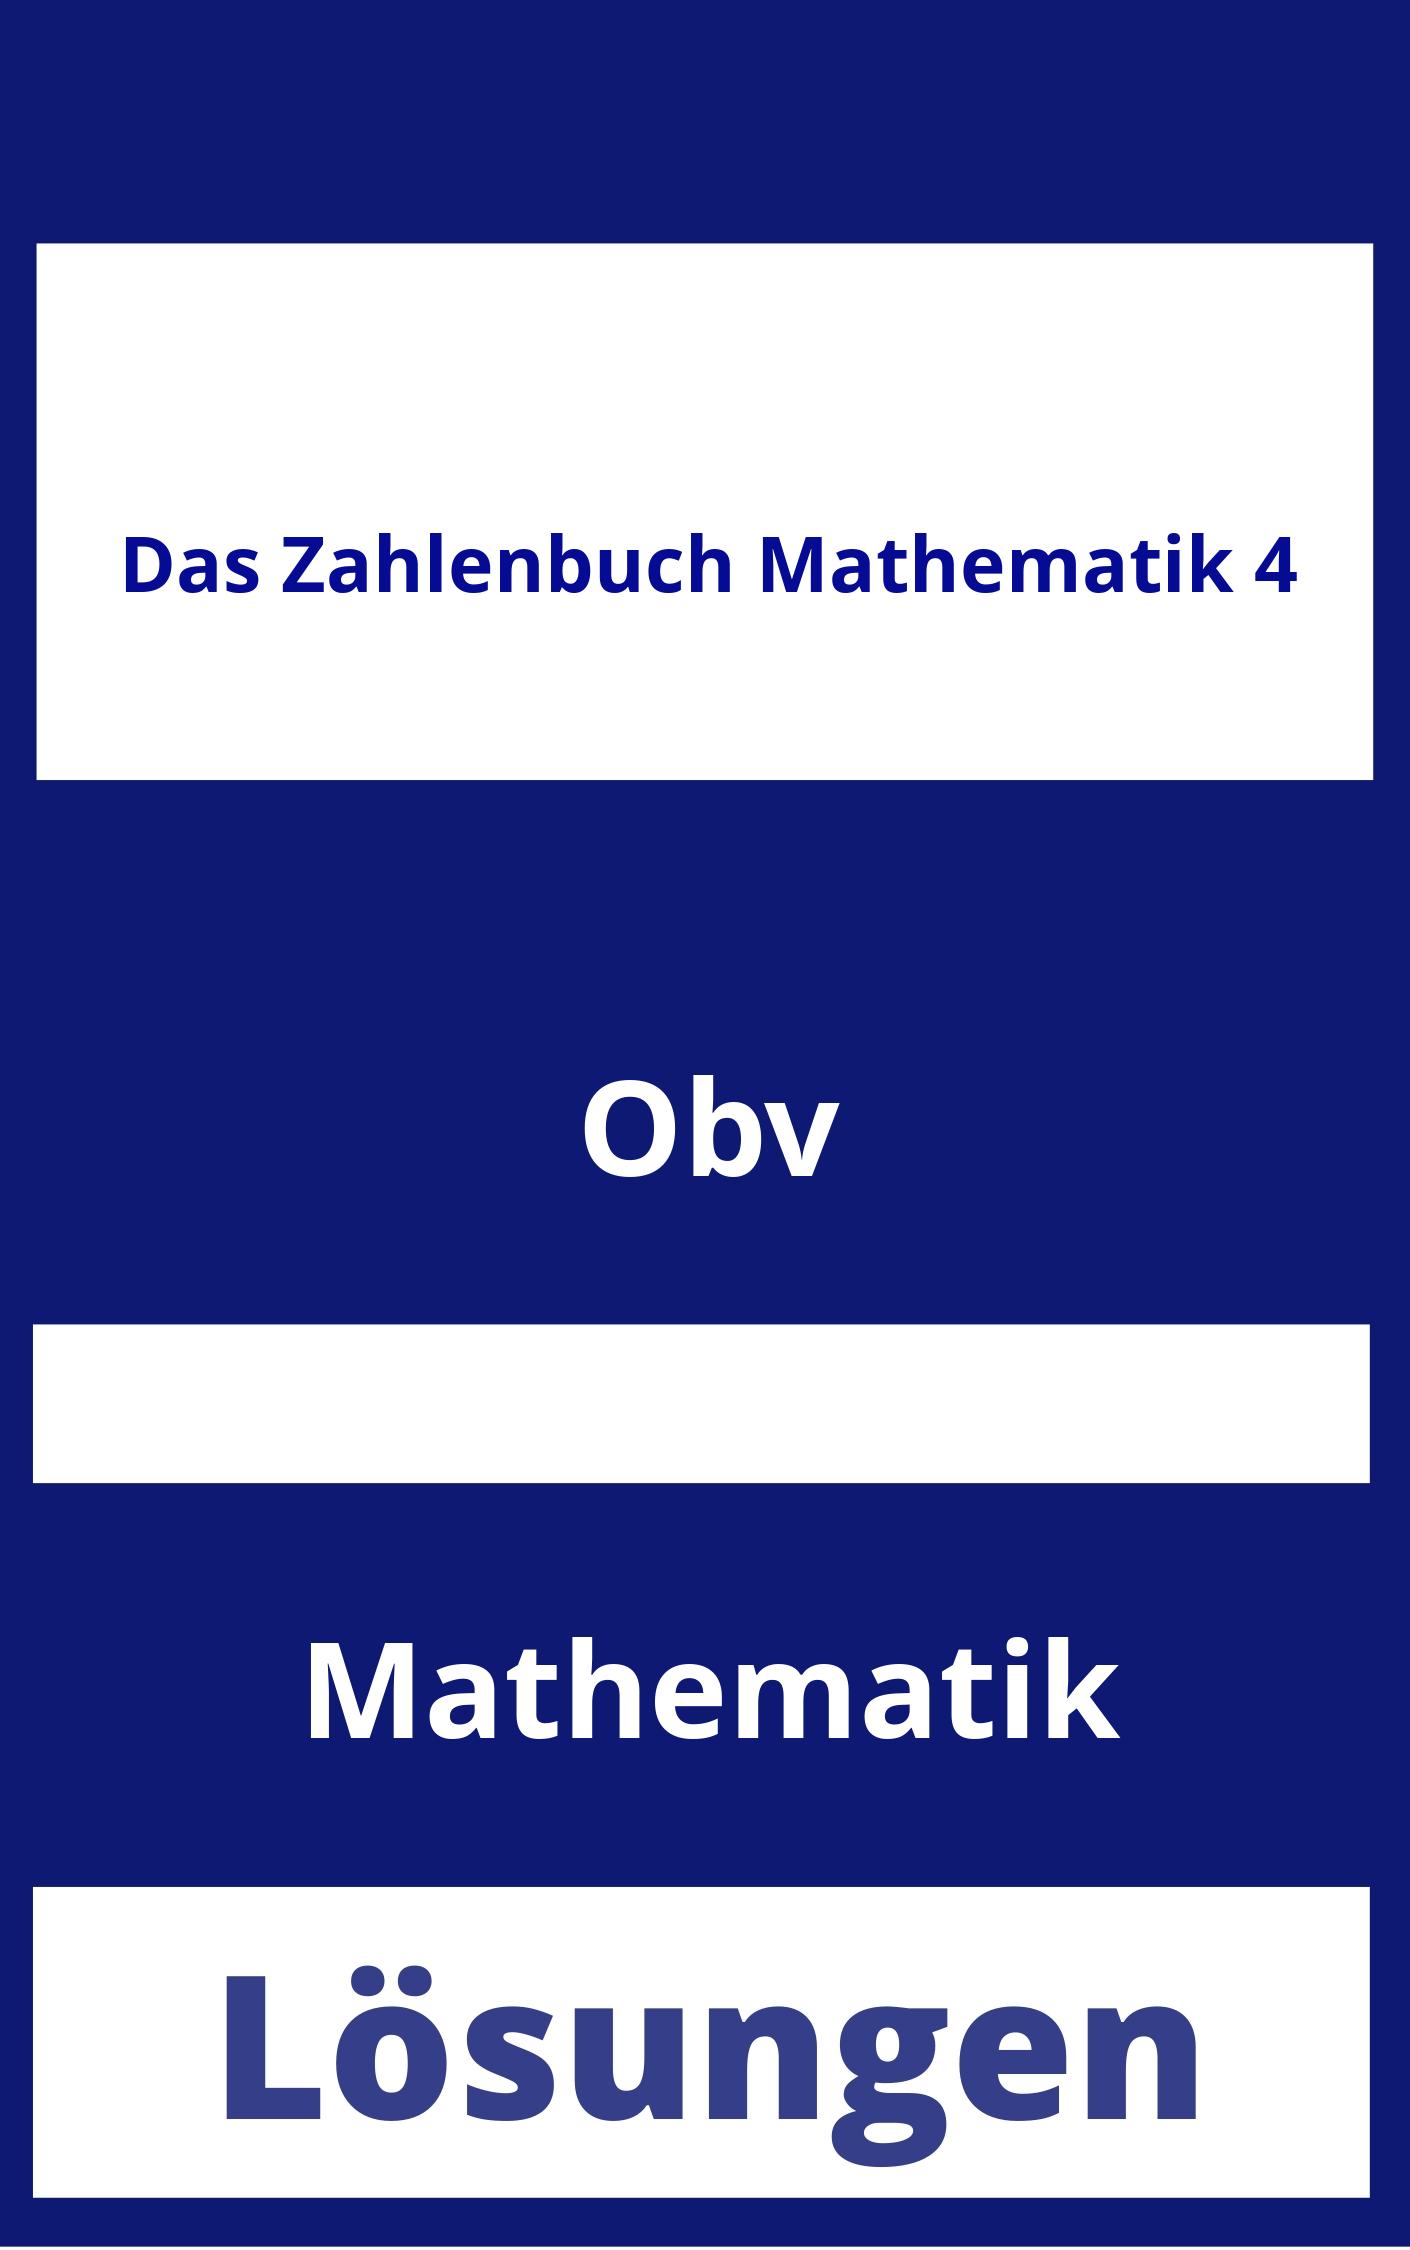 Das Zahlenbuch Mathematik 4 Lösungen PDF